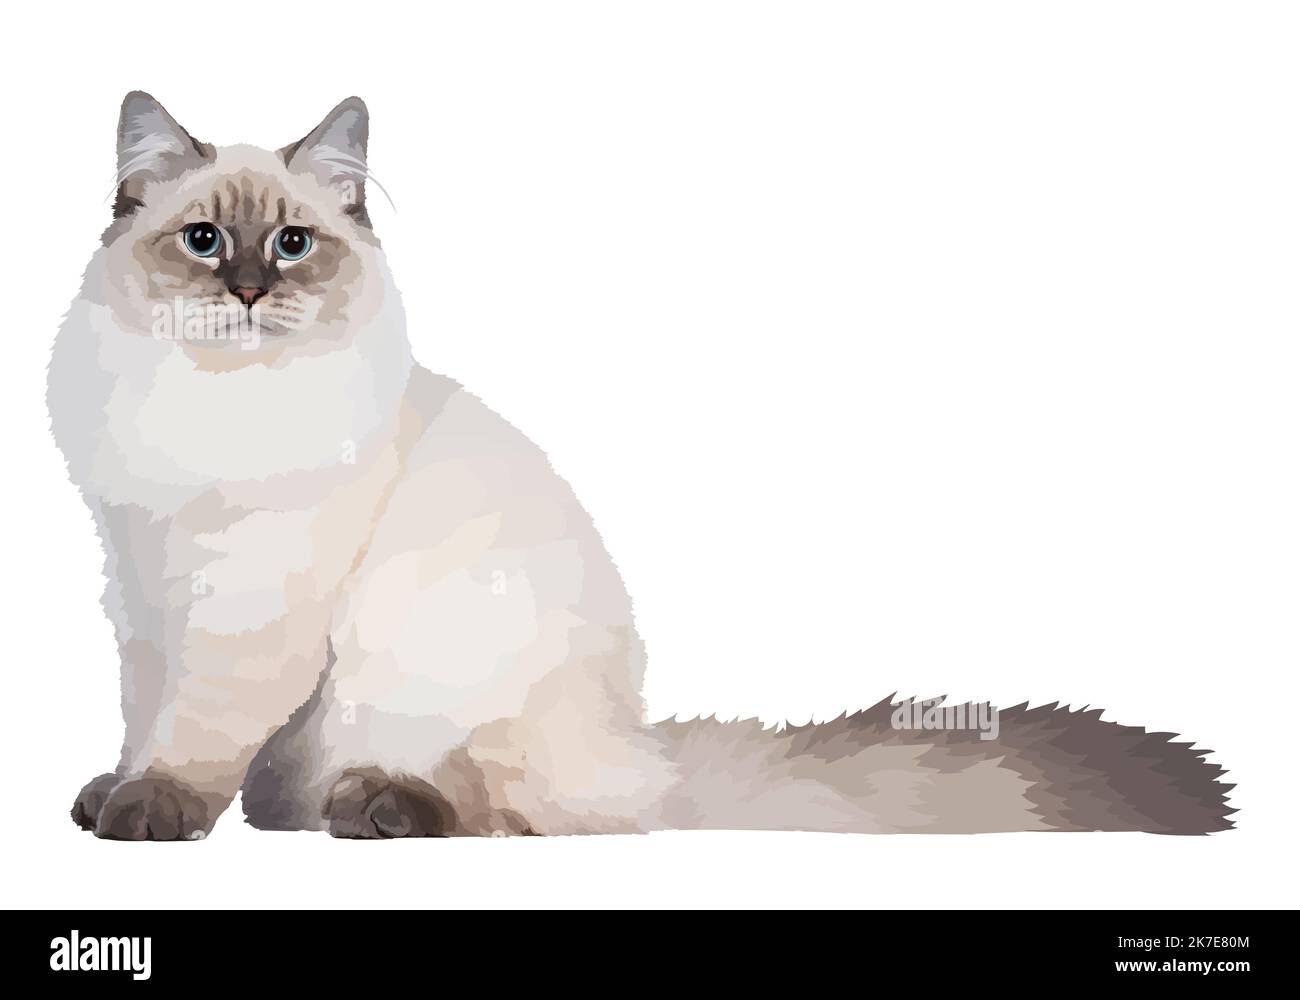 Realistische Vektor weiße Katze. Katze mit blauen Augen und flauschigem Schwanz, sitzend und in der Kamera schauend. Abbildung der Vorderansicht Stock Vektor